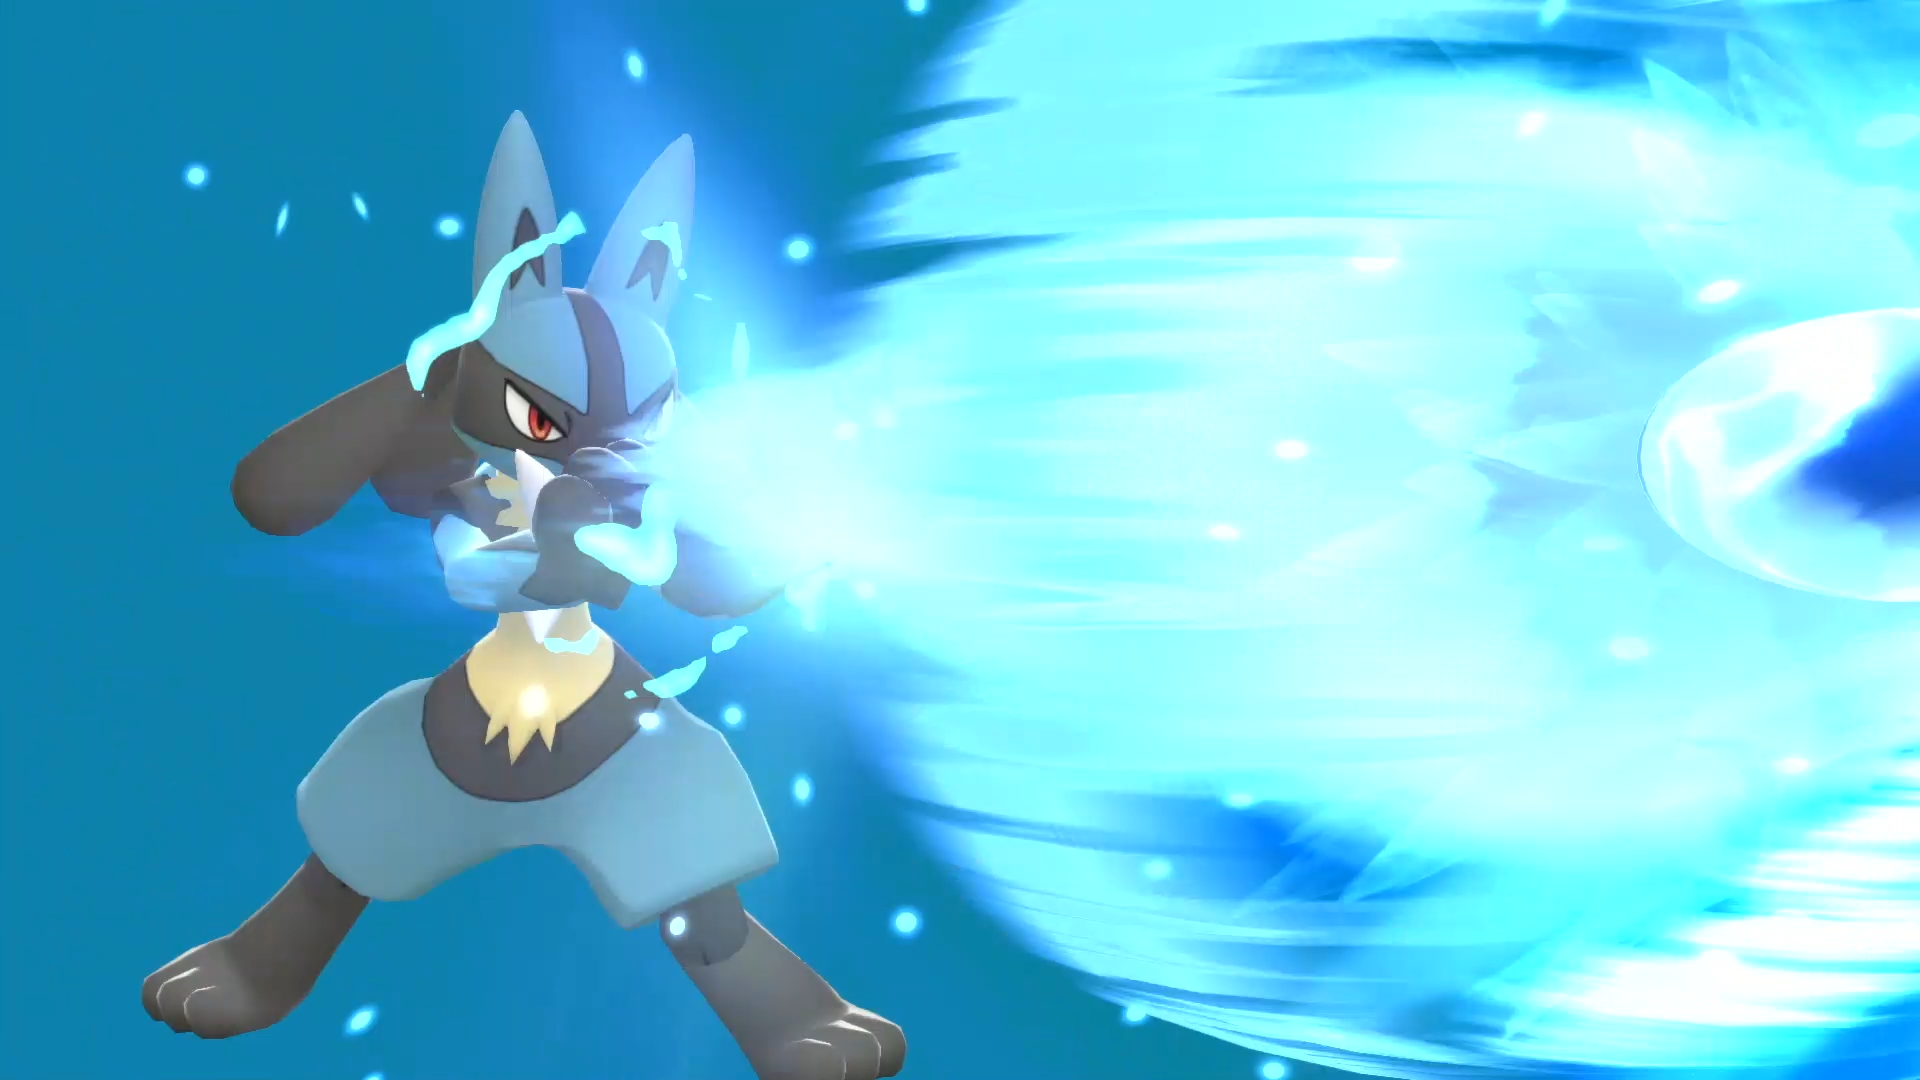 Pokémon seguirão jogadores em Brilliant Diamond e Shining Pearl - Canaltech